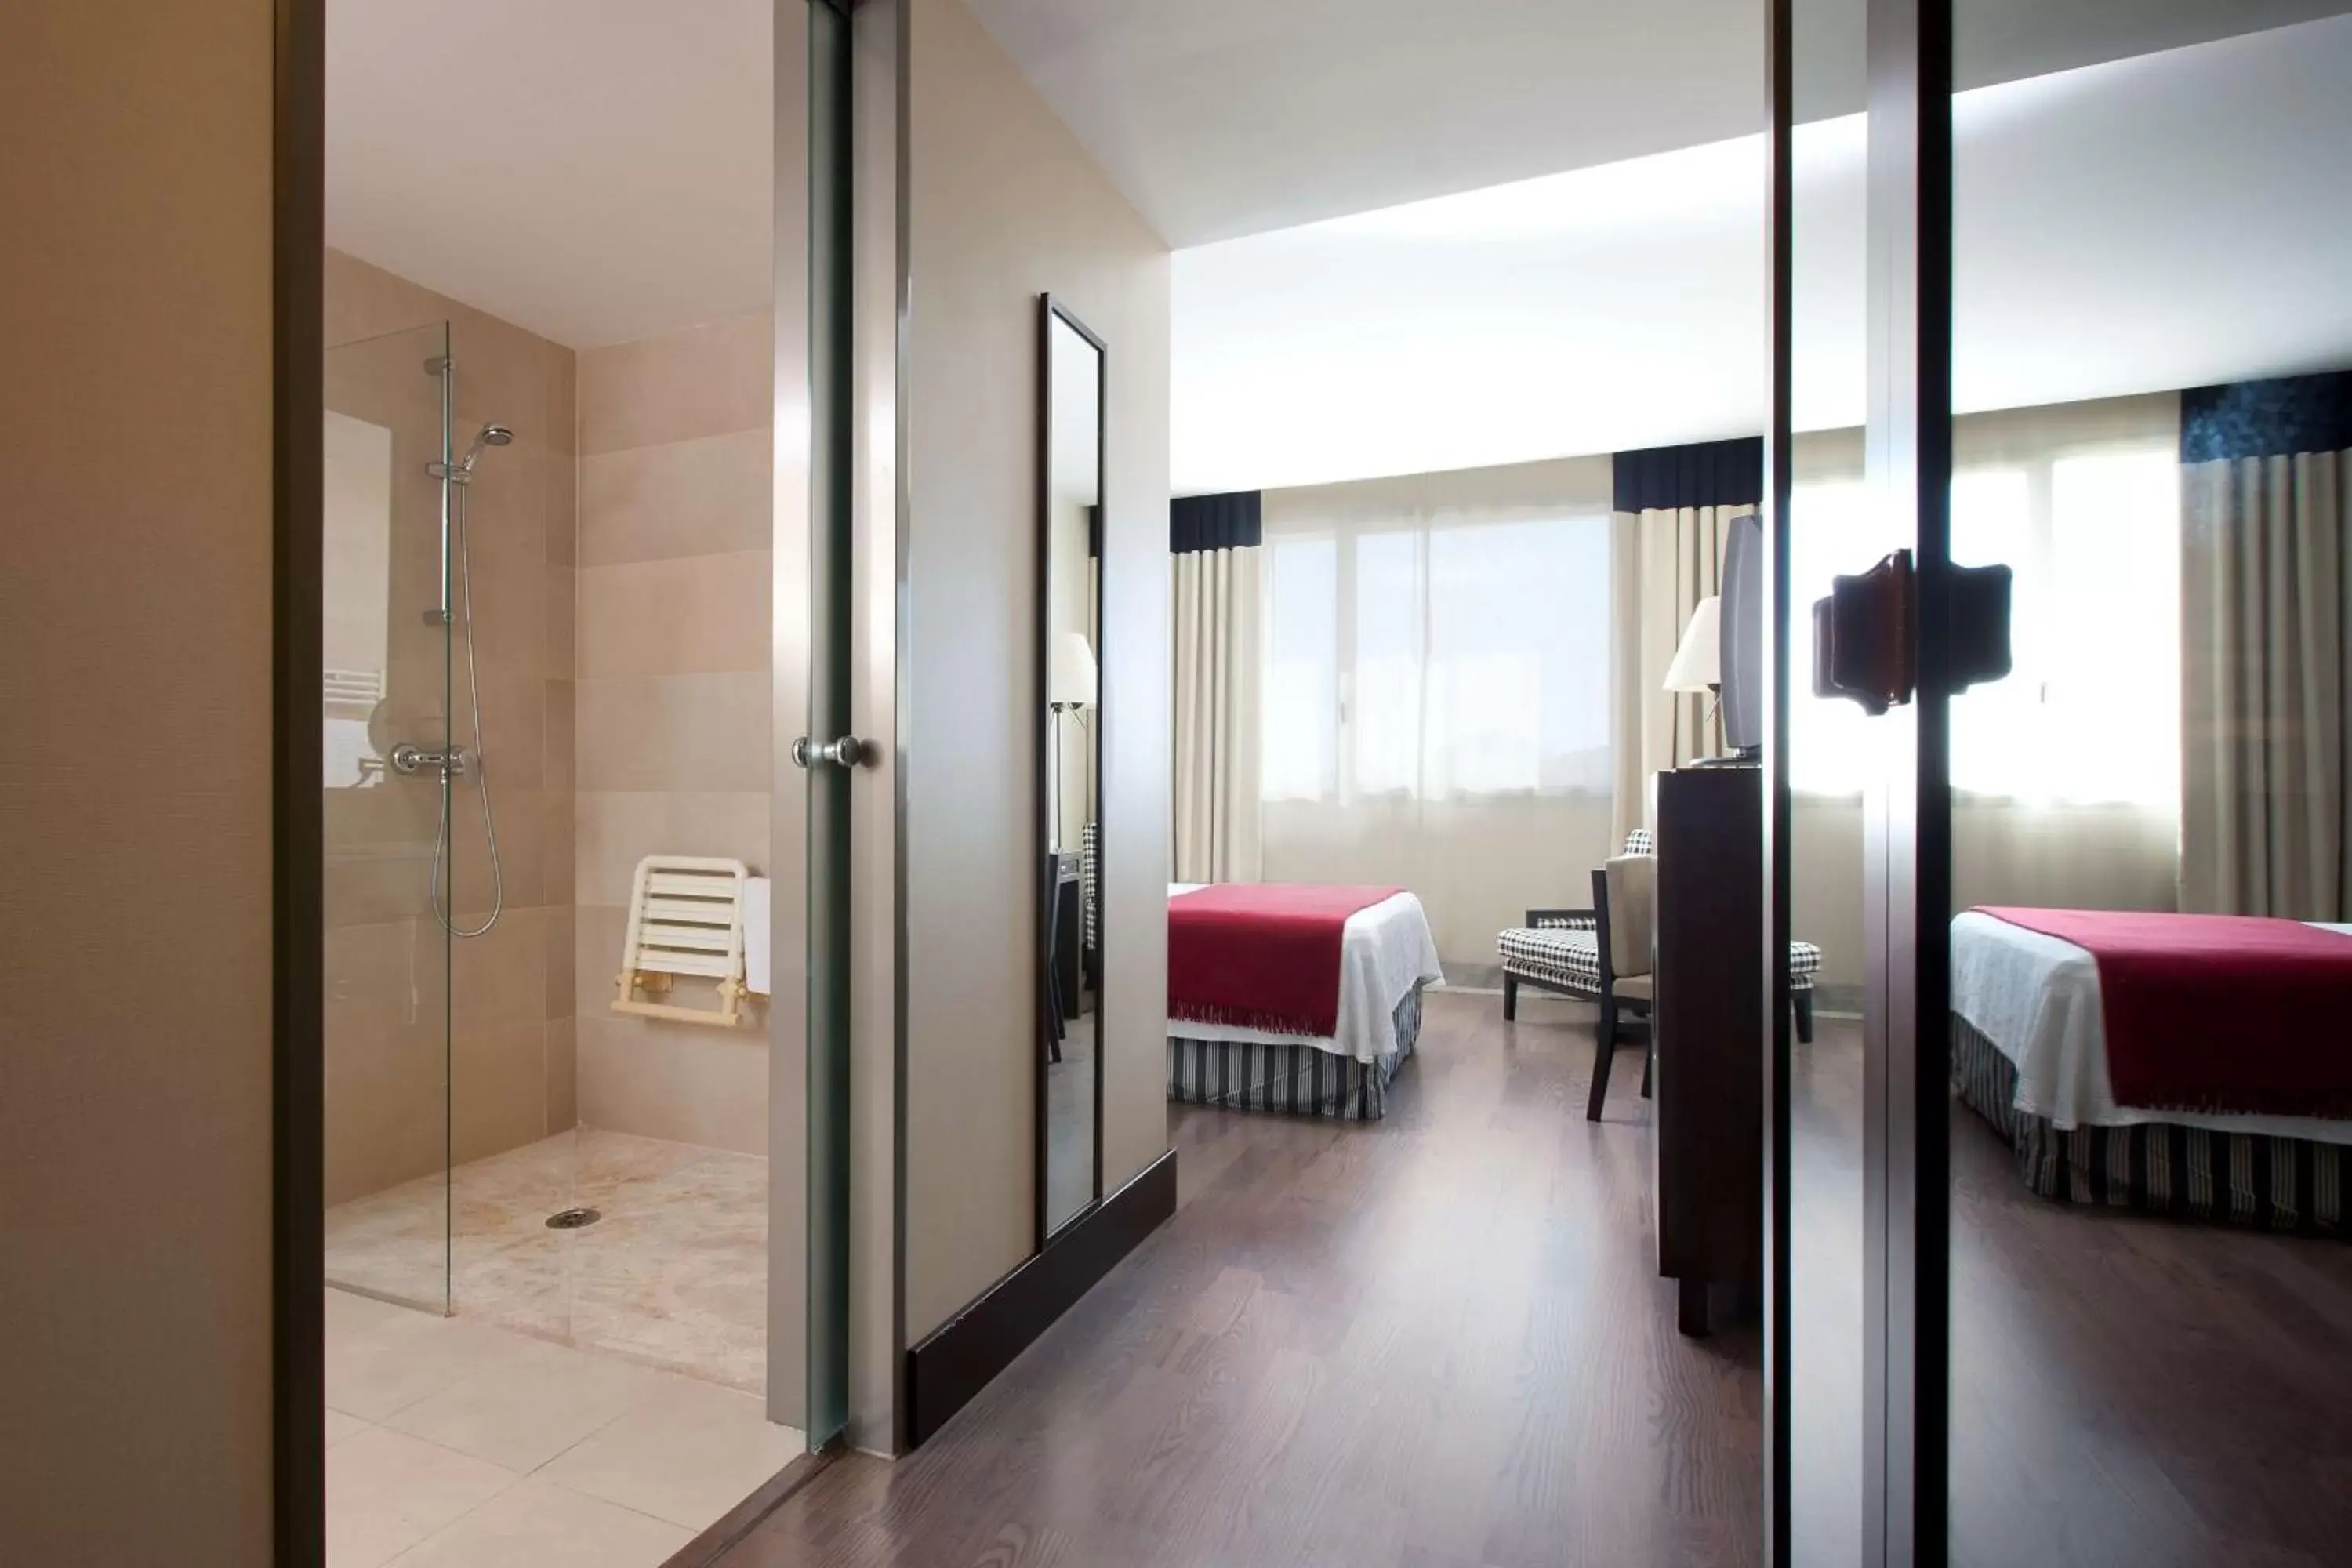 Bedroom, Bathroom in NH Alicante